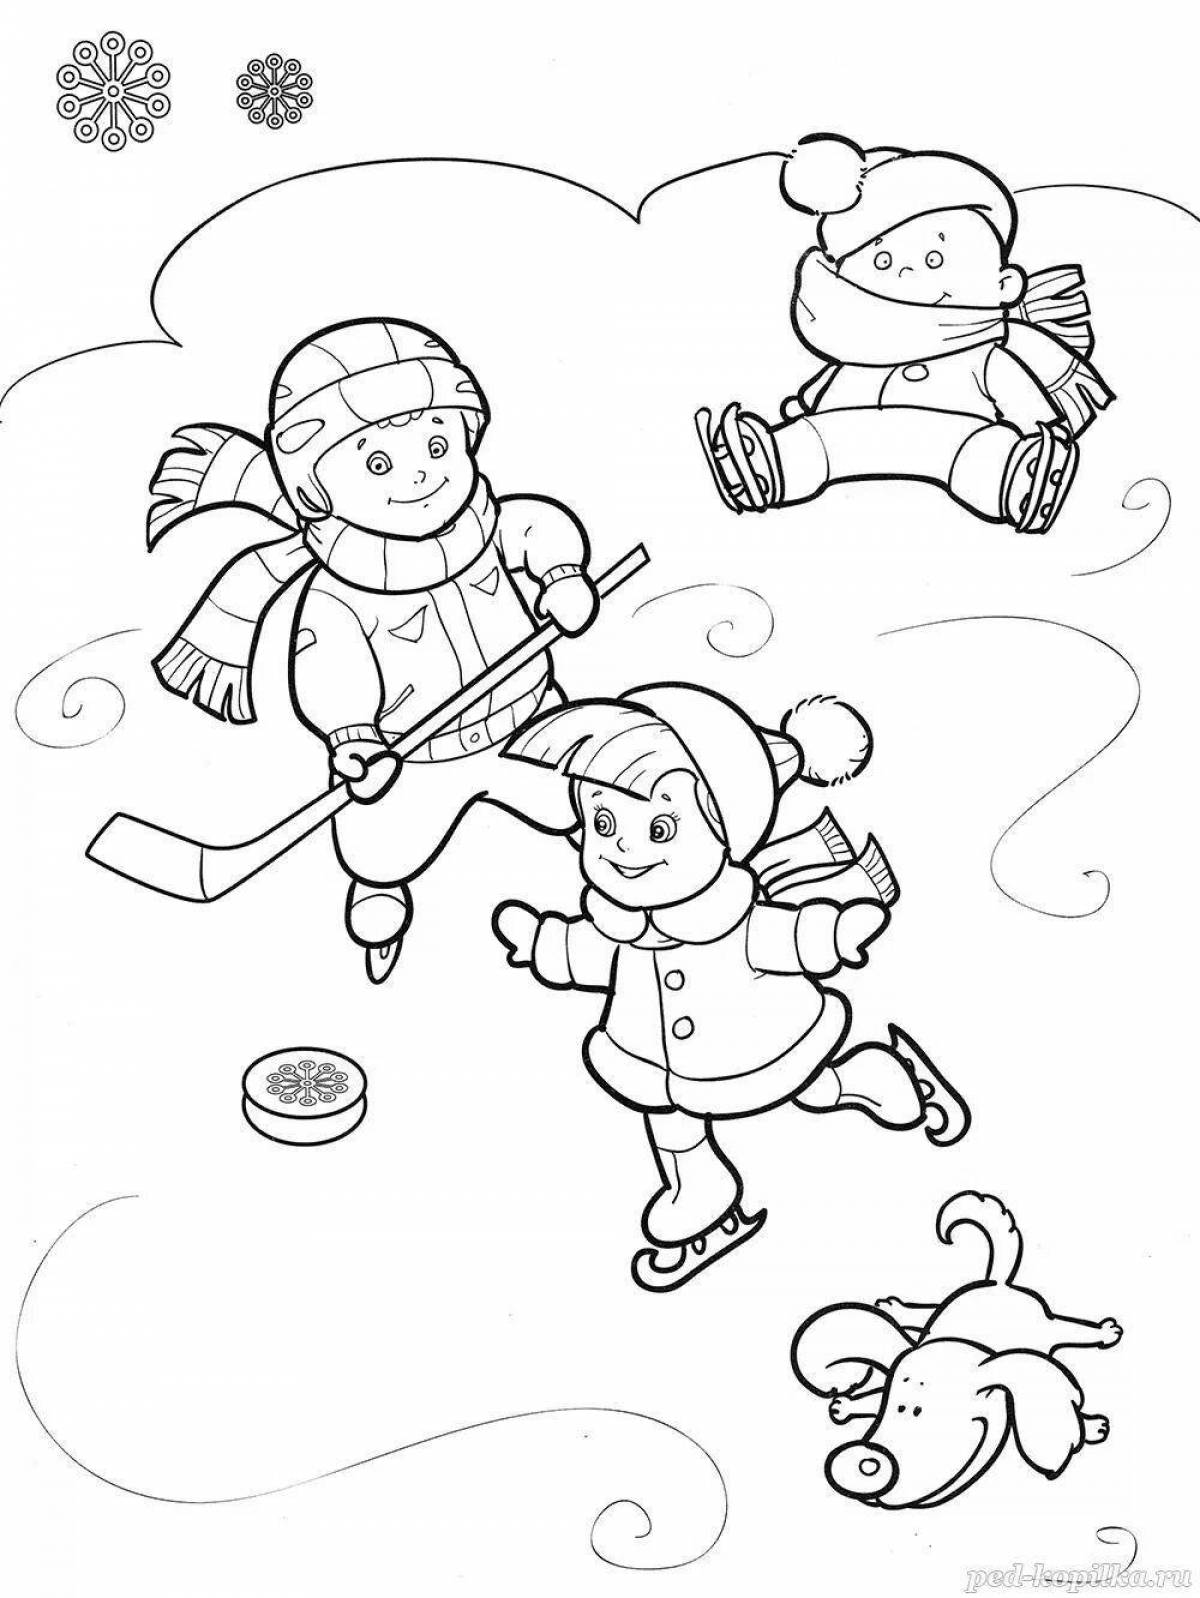 Изысканная раскраска для детей о зимних видах спорта